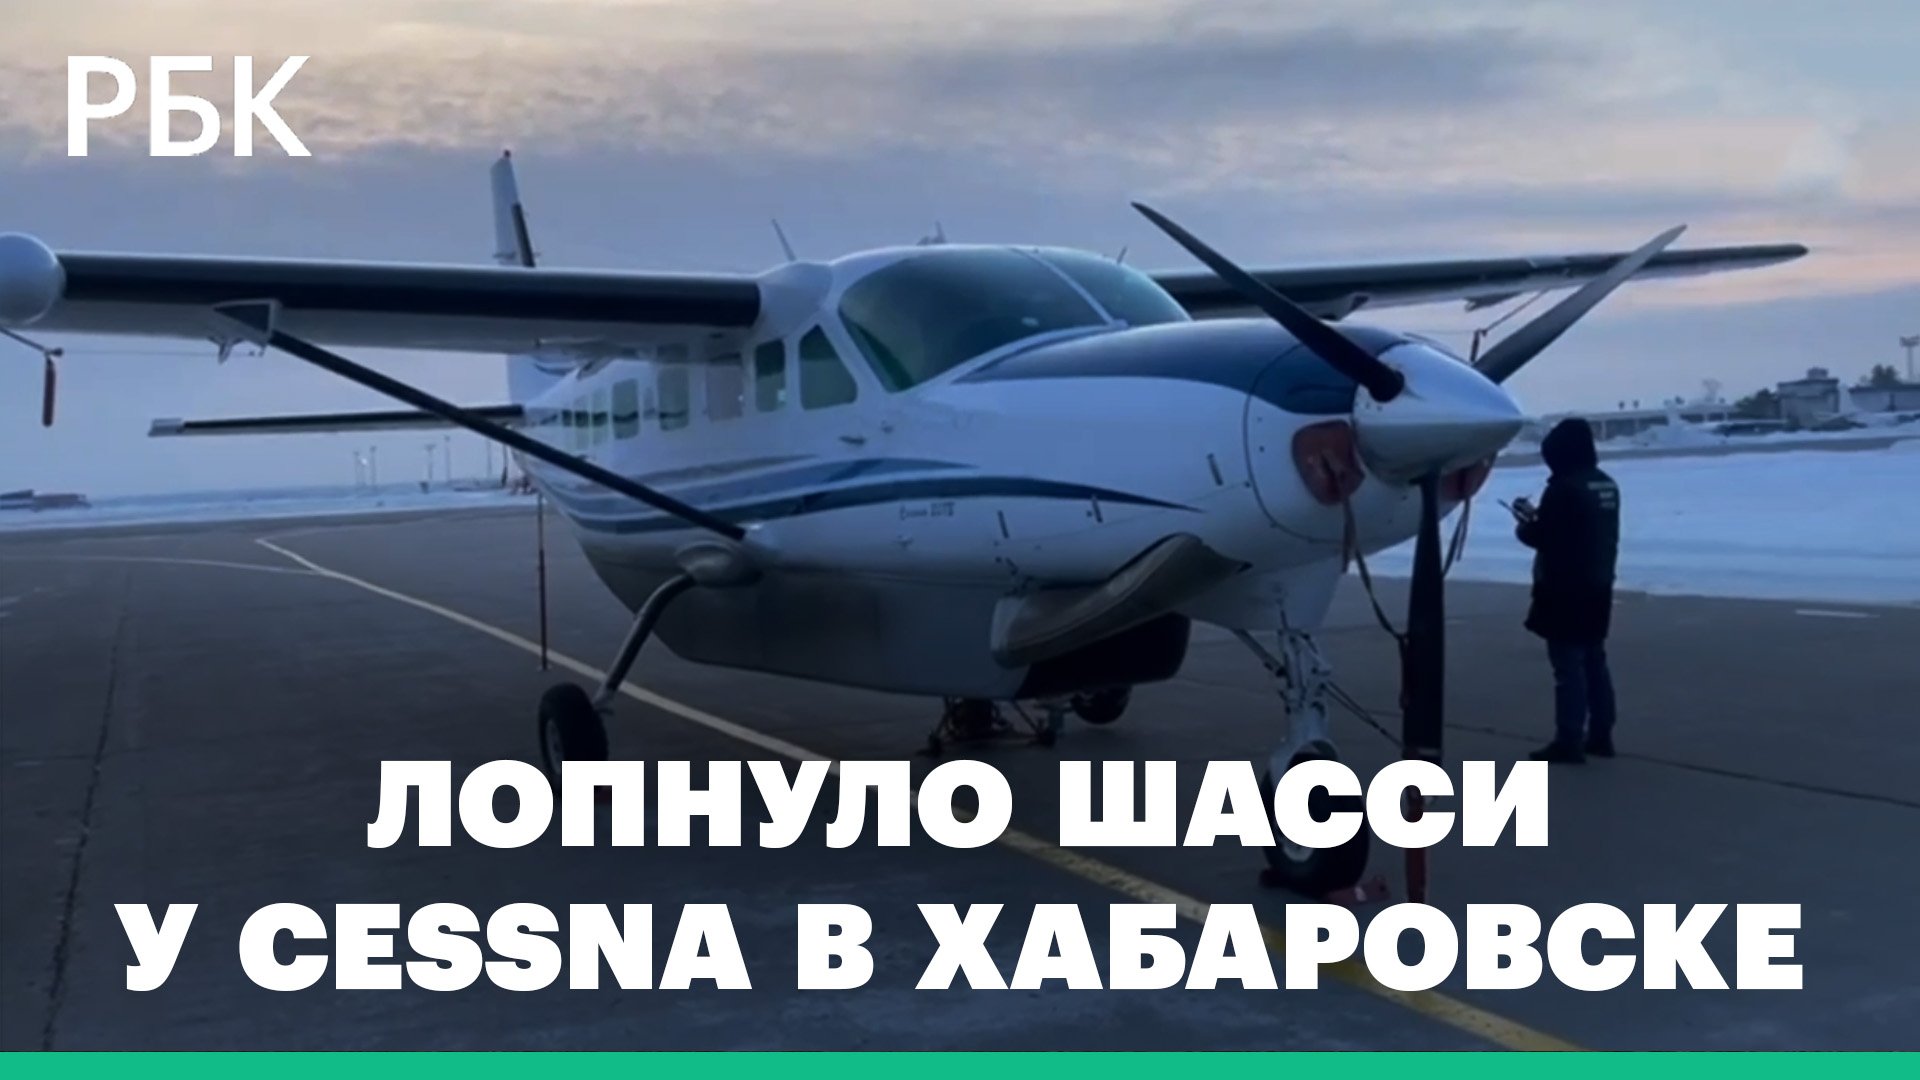 СК начал проверку после ЧП с лопнувшим шасси у Cessna в Хабаровске